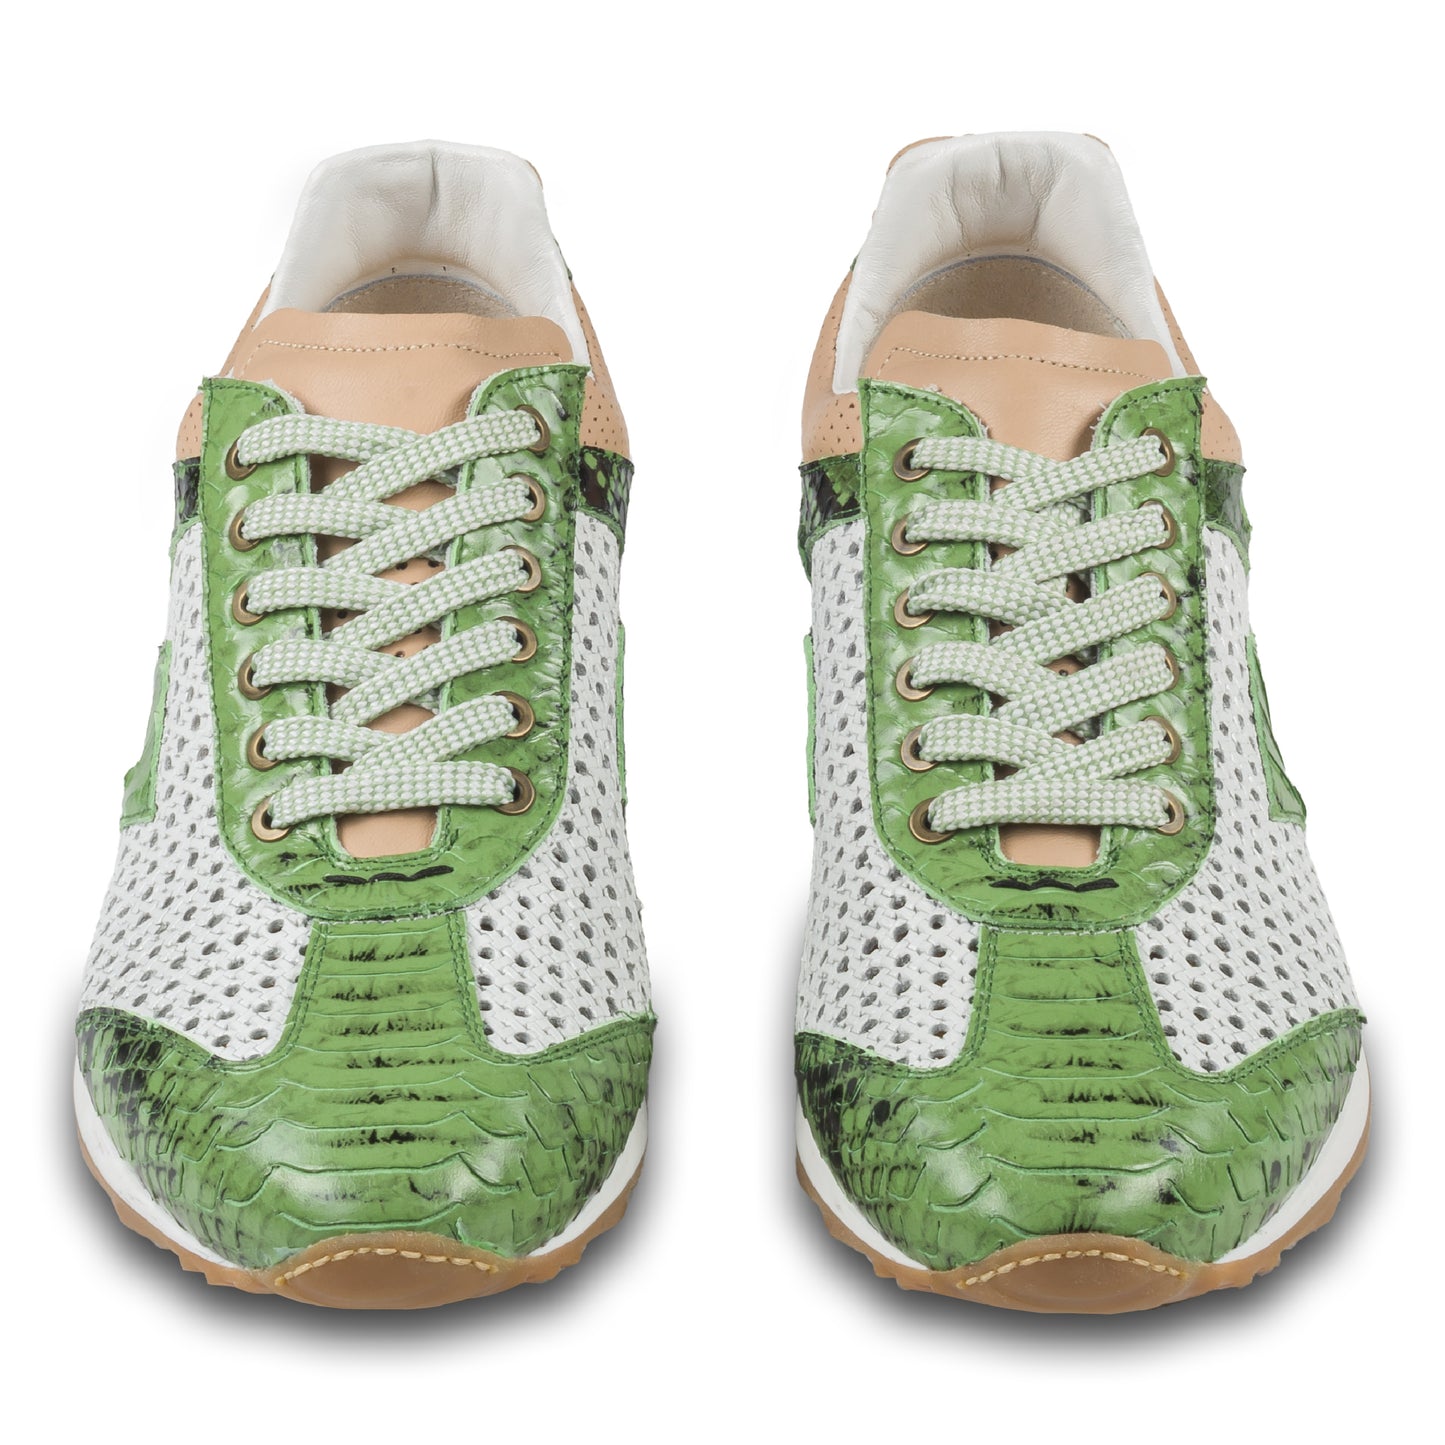 Lorenzi Herren Leder Sneaker in grün / weiß mit Schlangen-Prägung und perforiertem Kalbsleder. Handgefertigt in Italien. Paarweise Ansicht von vorne. 